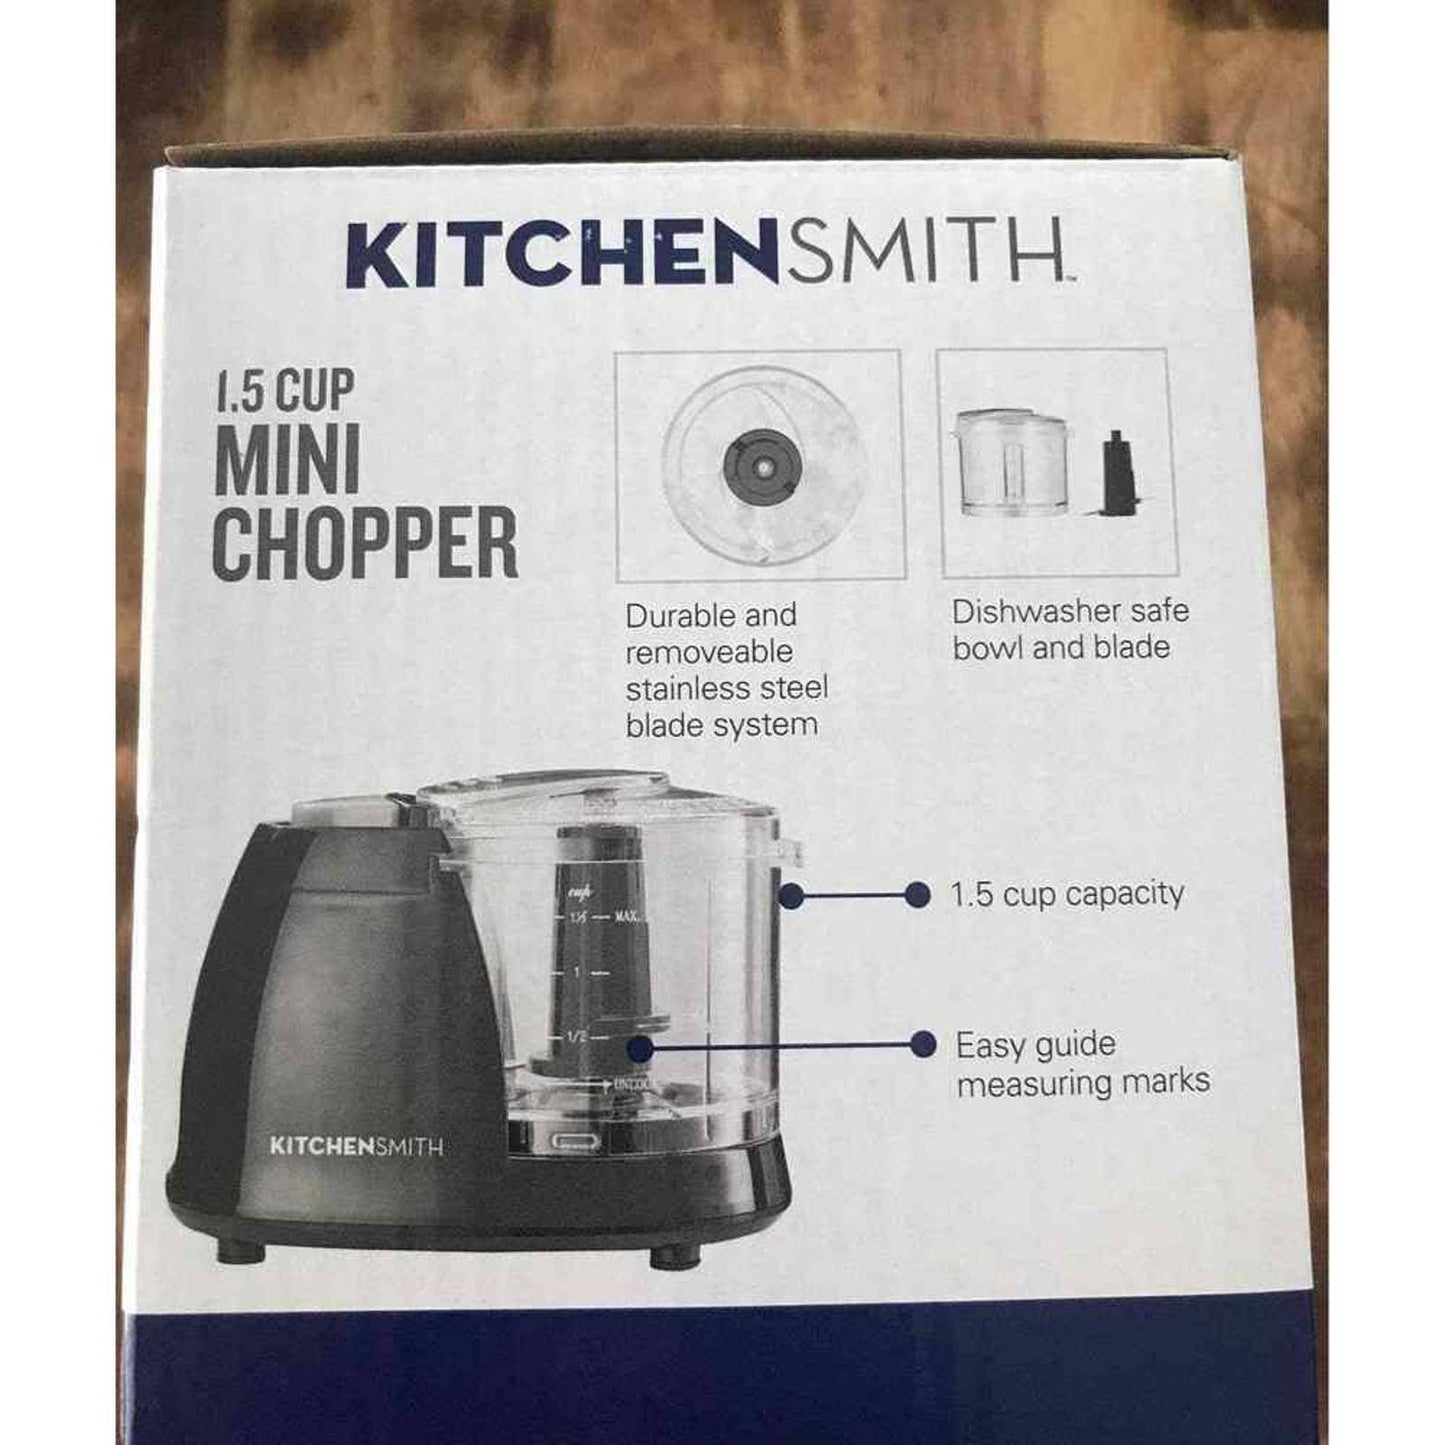 Kitchen Smith 1.5 Cup Mini Chopper mini manual food chopper